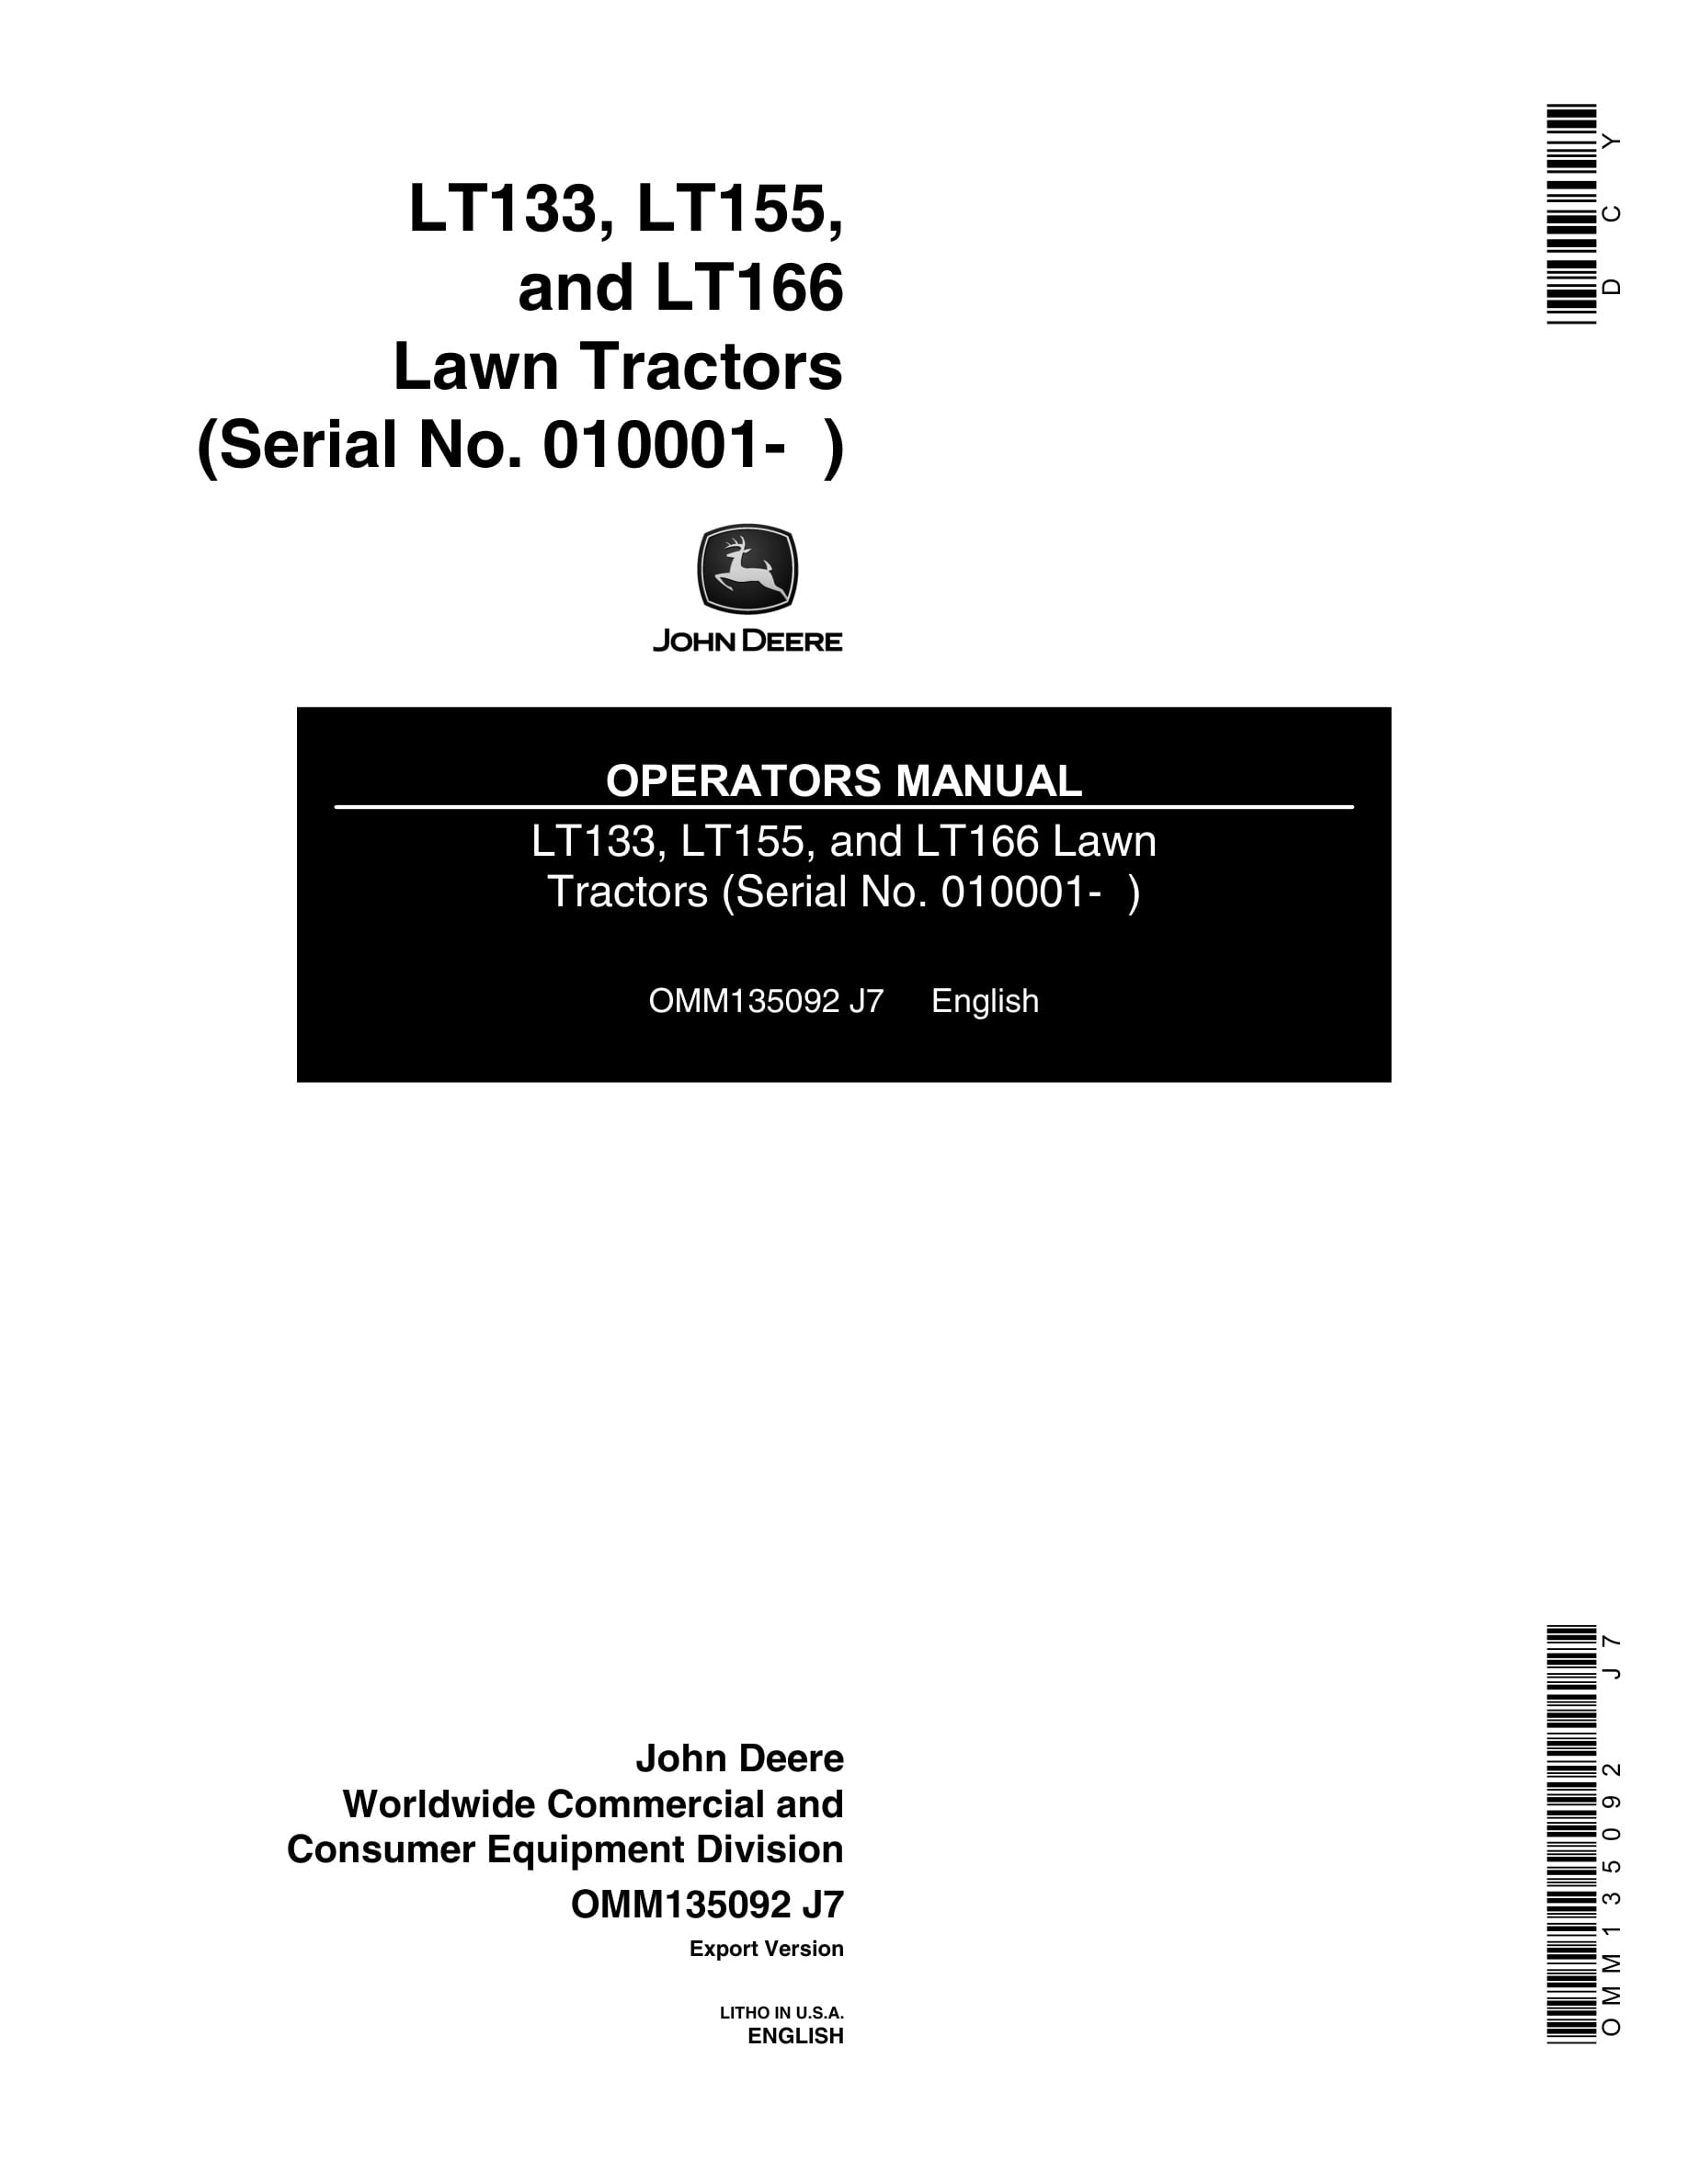 John Deere Lt133, Lt155, And Lt166 Lawn Tractors Operator Manuals OMM135092-1